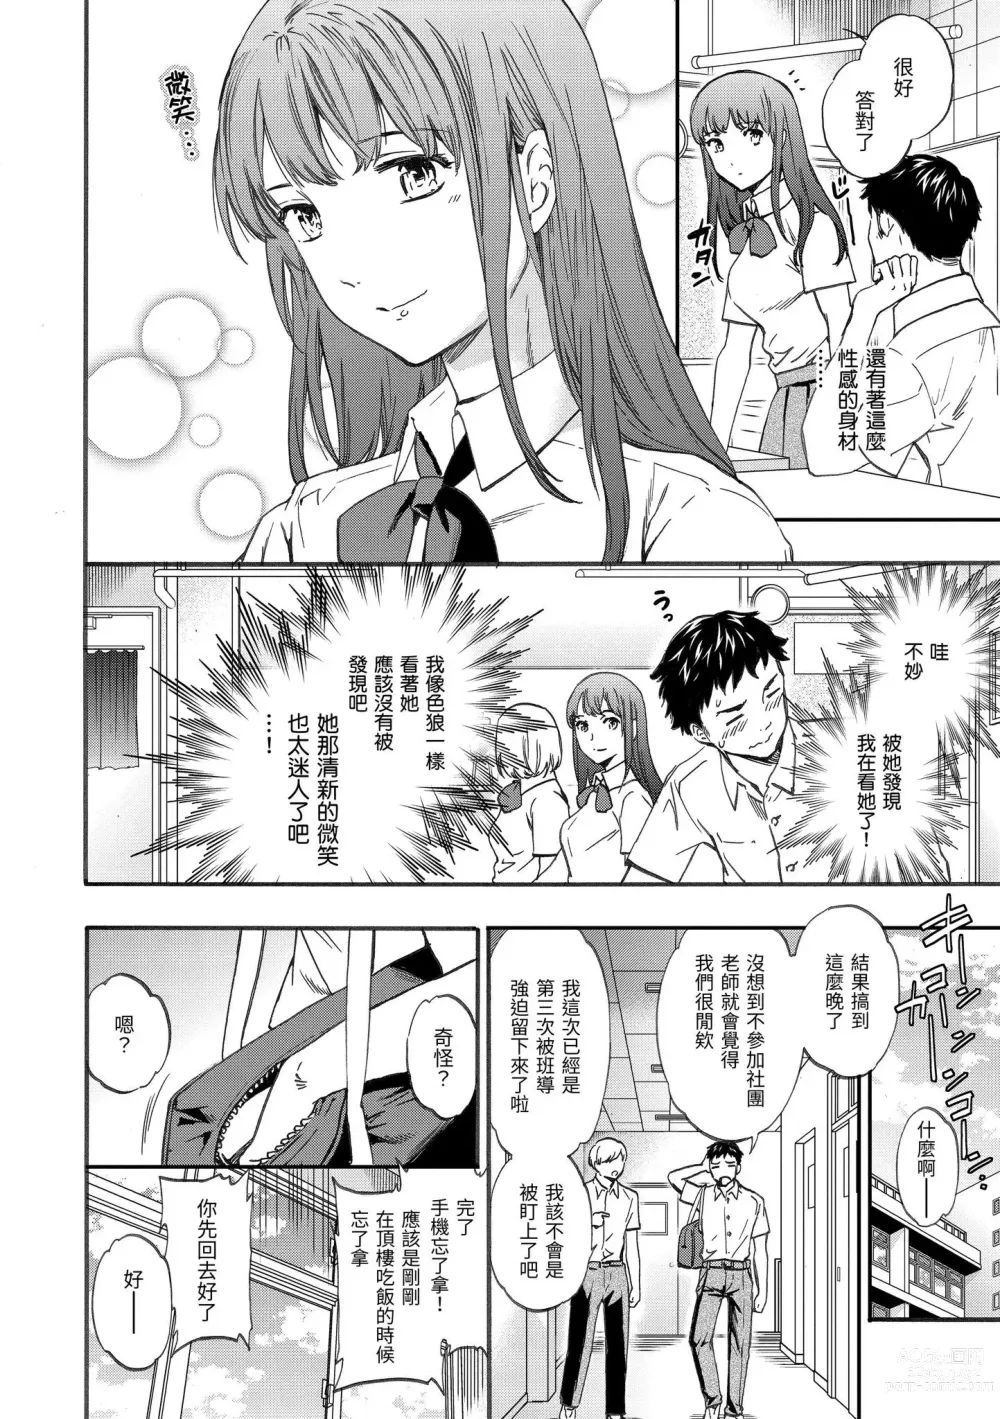 Page 7 of manga 柔情泥濘